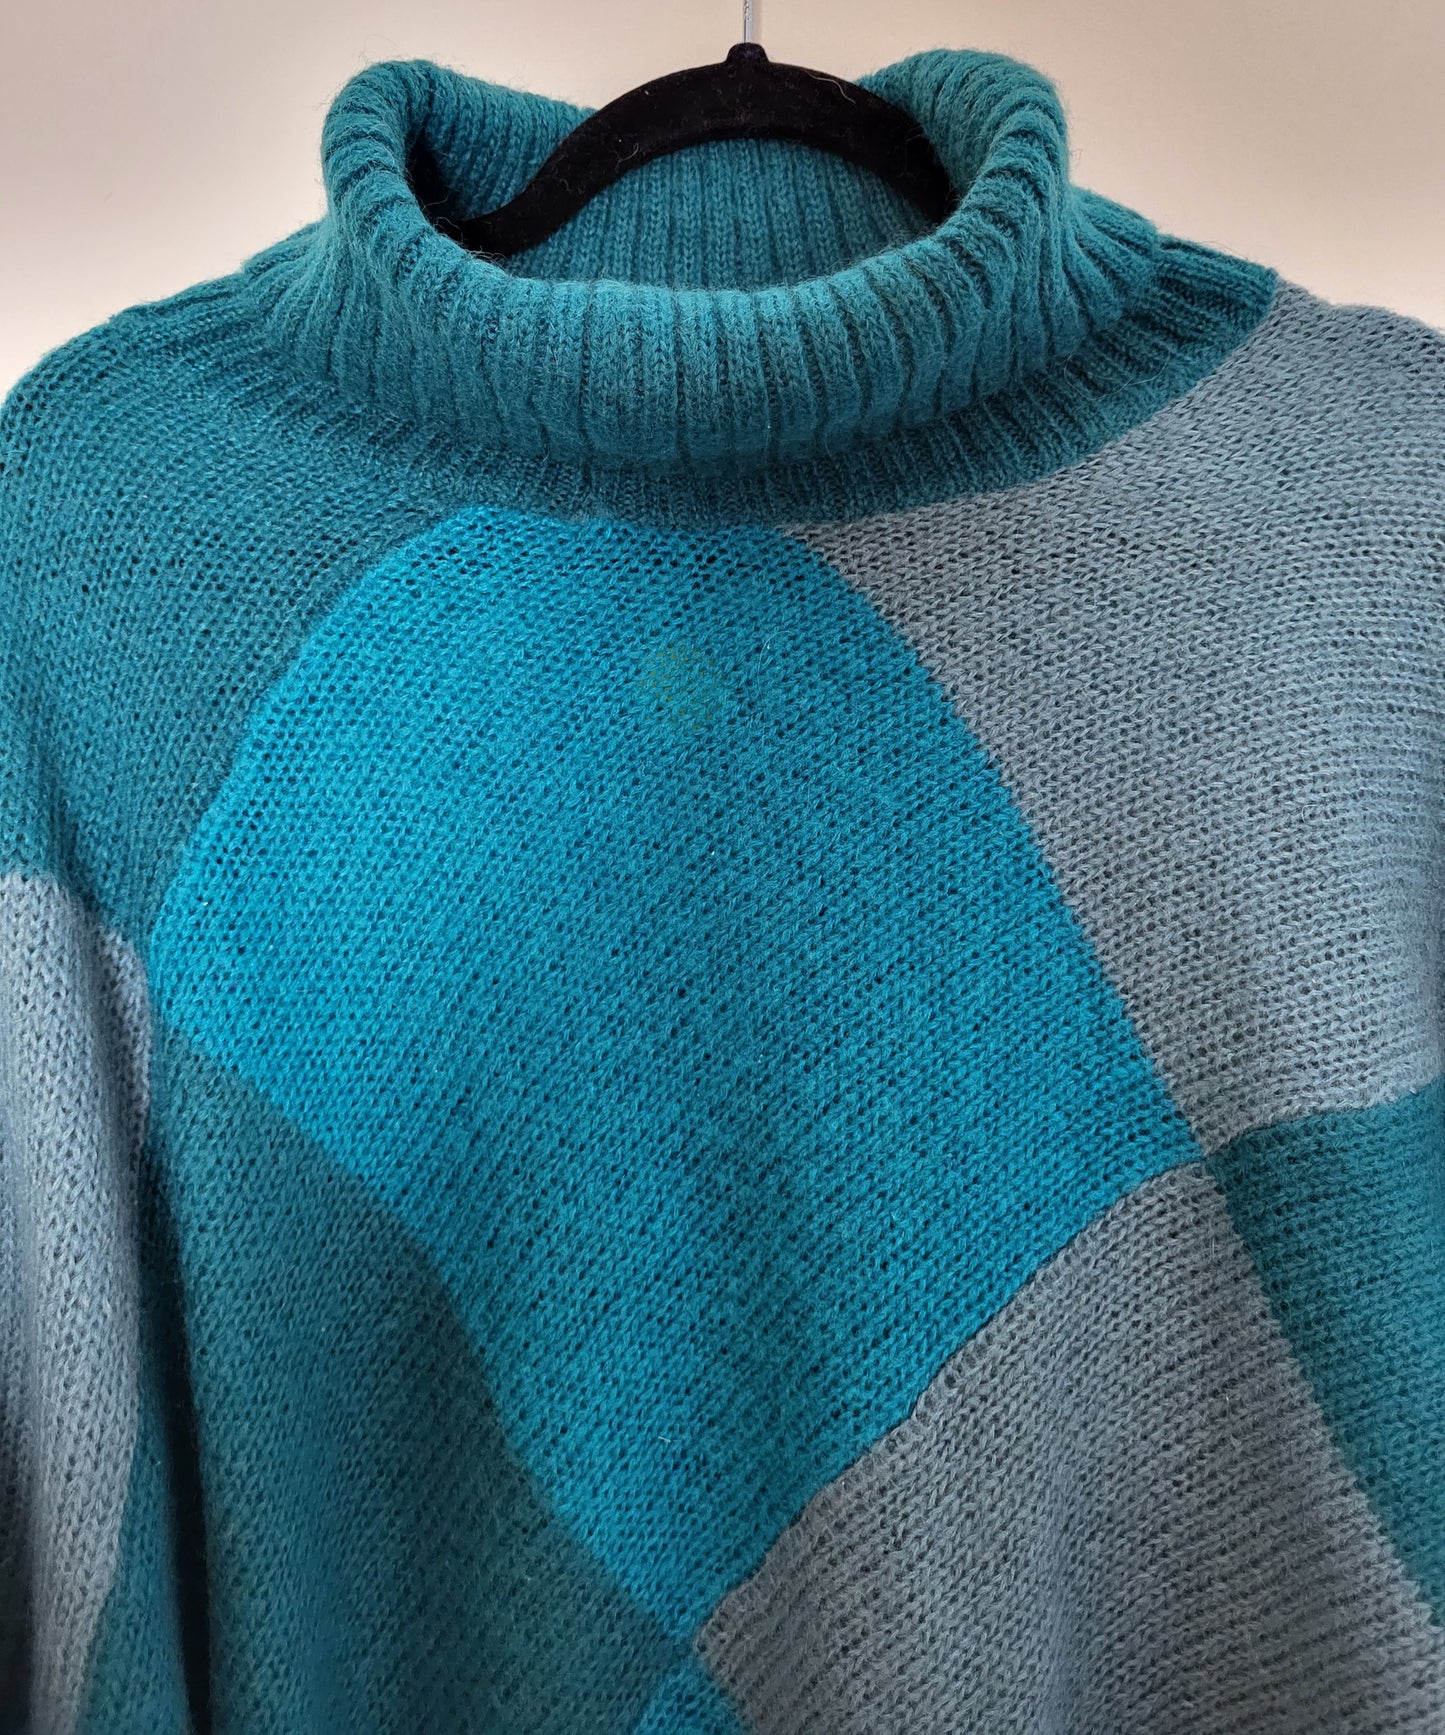 Vintage - Pullover - Muster und Kragen - Vintage Italy - Bunt - Damen - L/XL